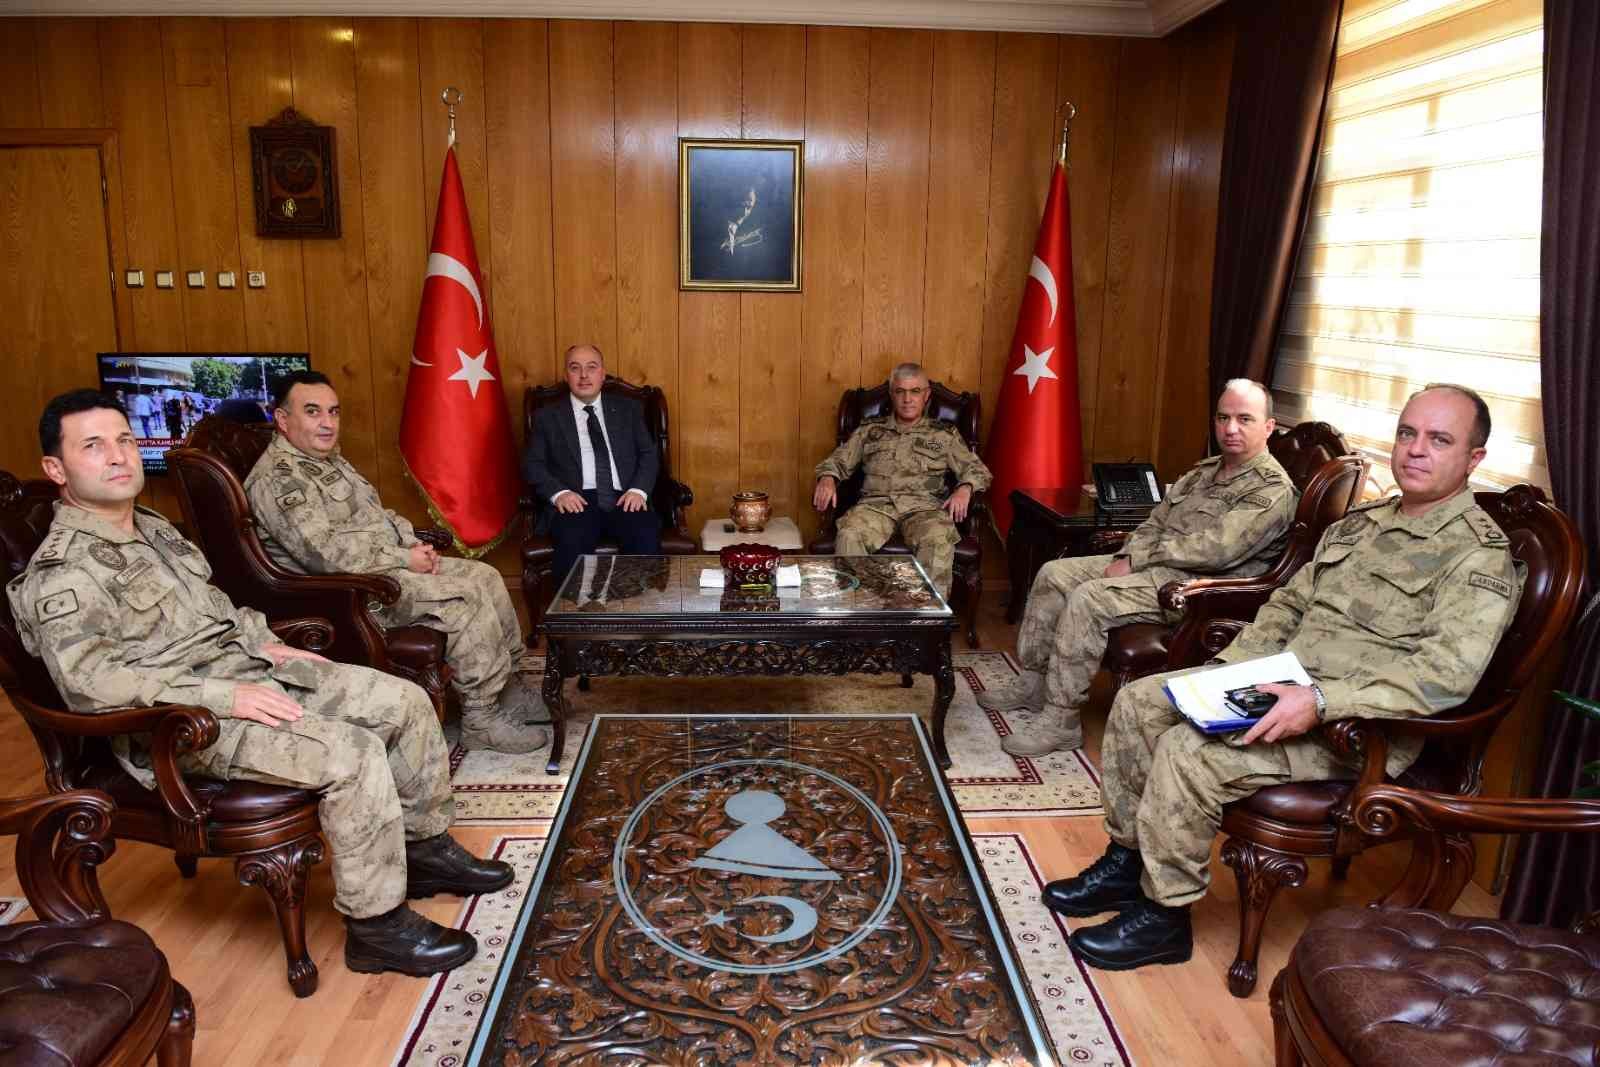 Jandarma Genel Komutanı Org. Çetin’den Kahramanmaraş Valisi Coşkun’a ziyaret #kahramanmaras